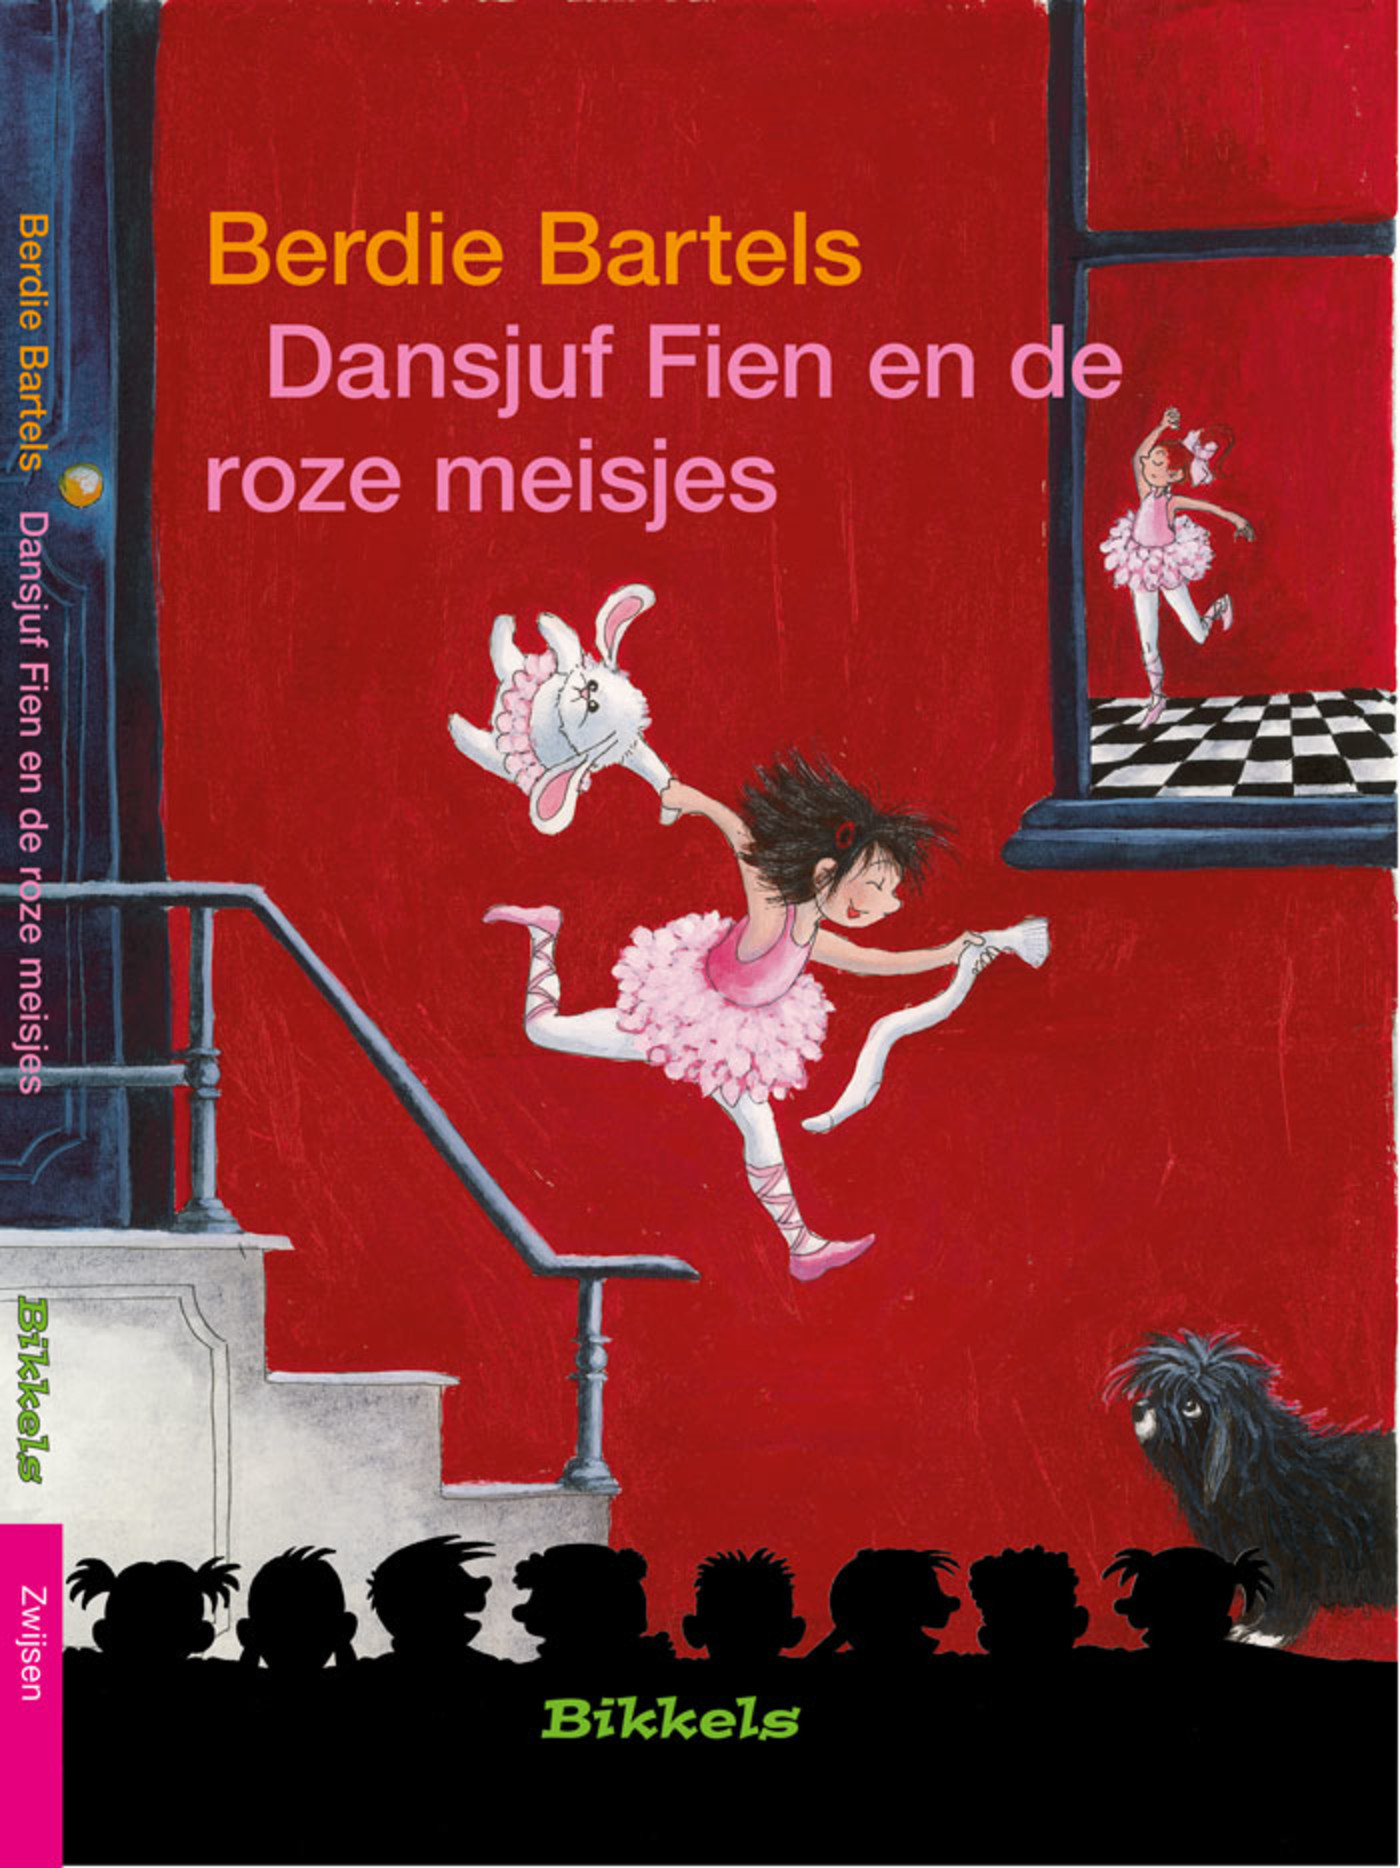 Dansjuf Fien en de roze meisjes (Ebook)